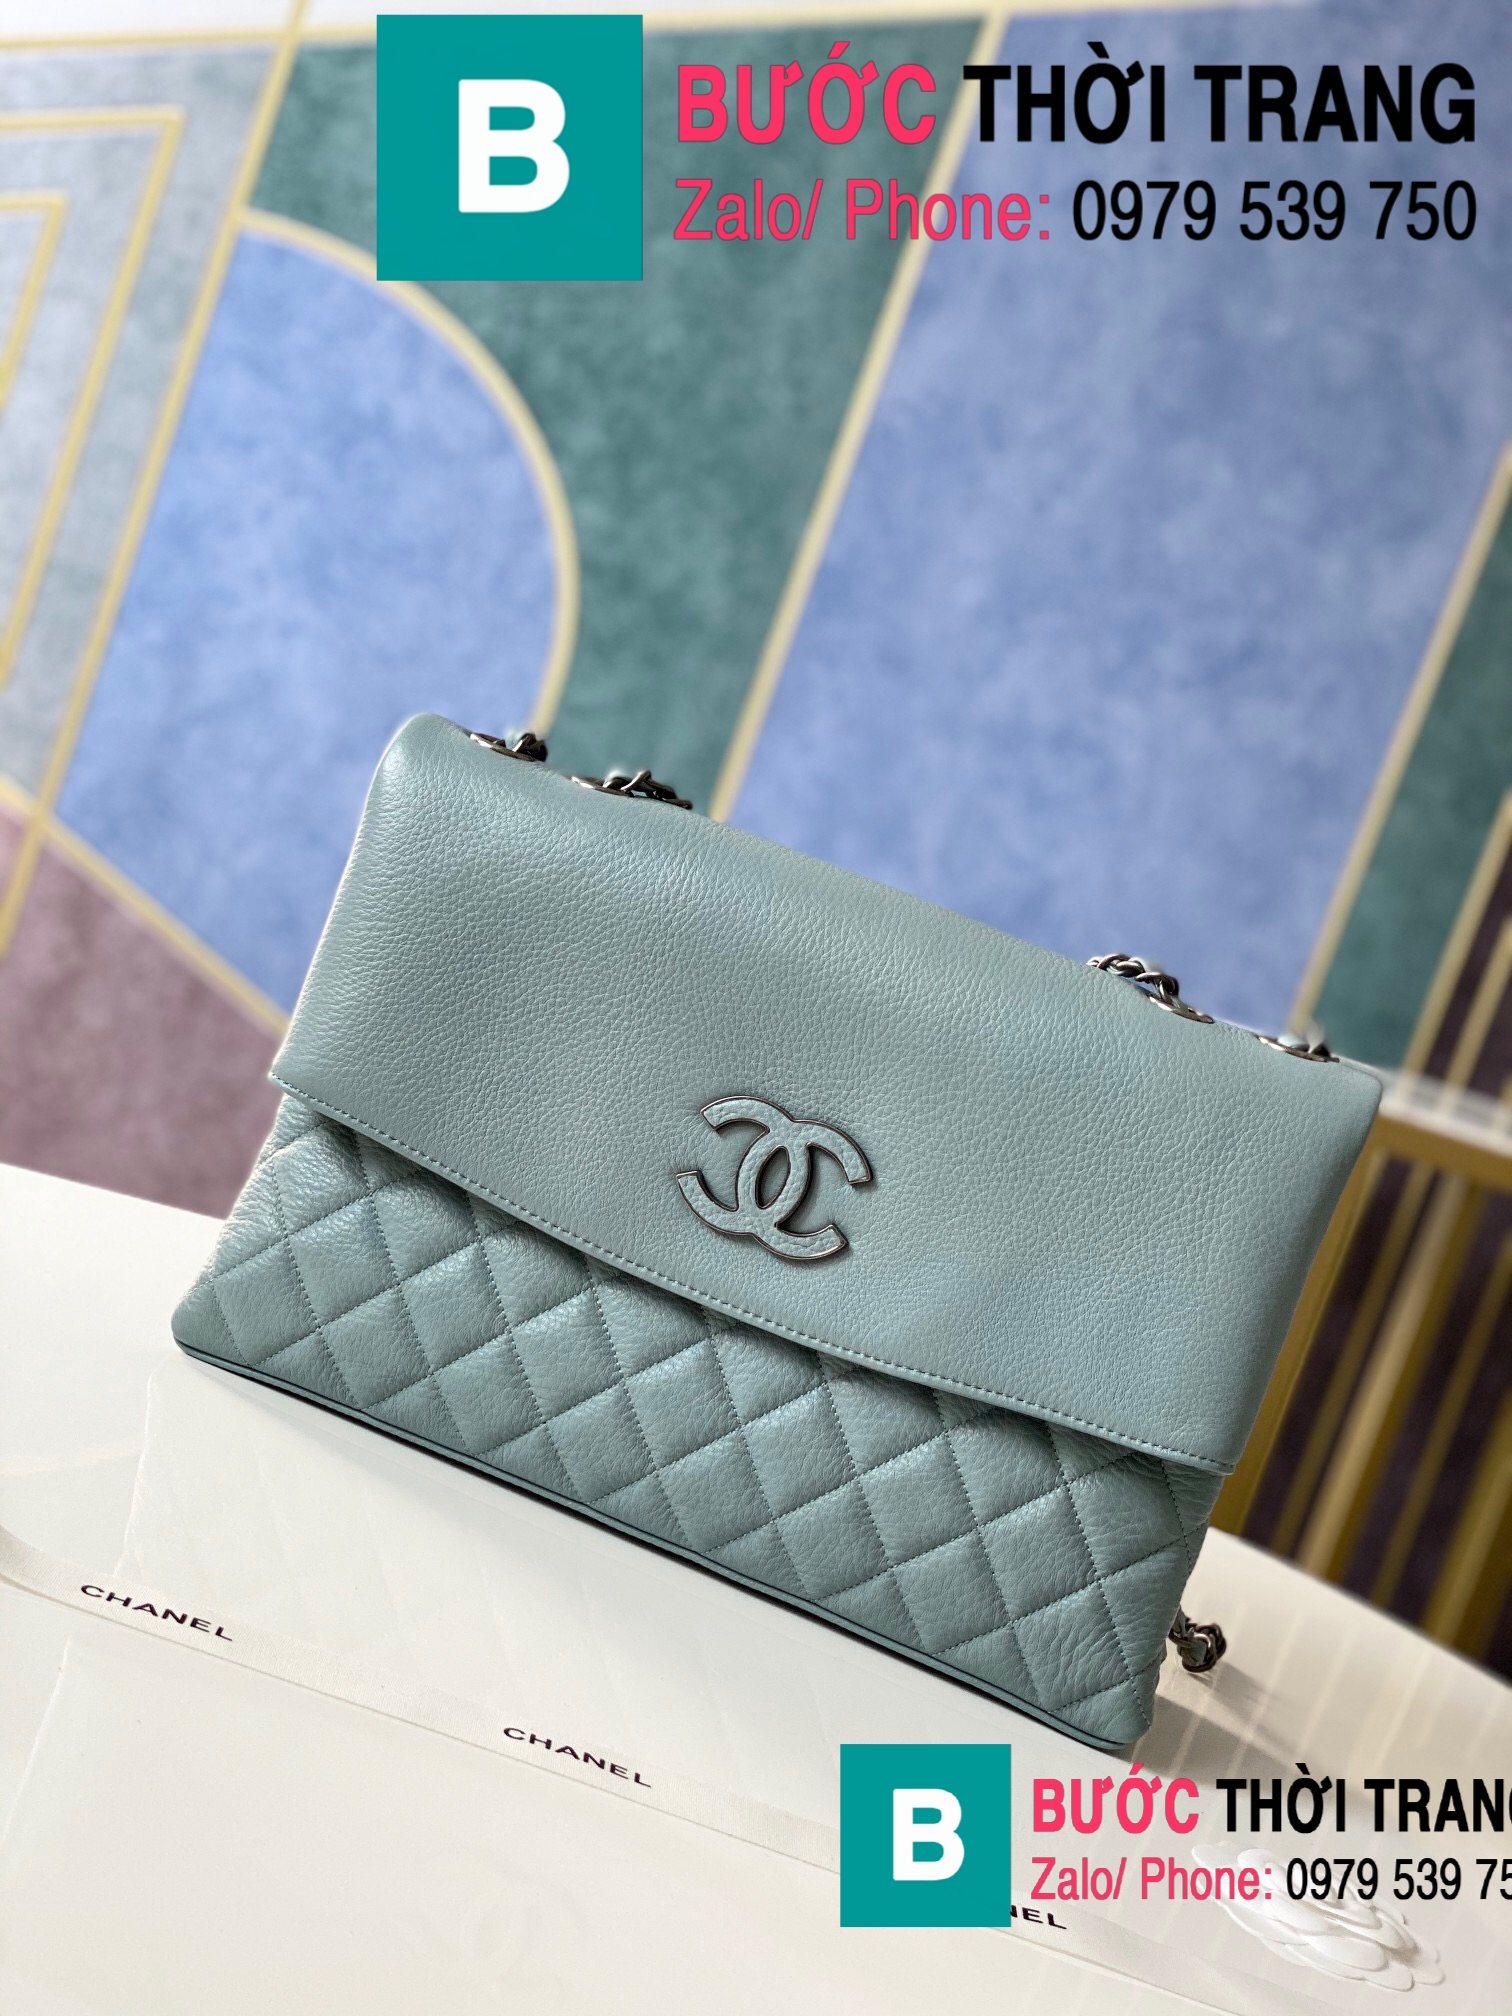 Túi đeo chéo Chanel Bag siêu cấp da cừu màu xanh size 32cm – 7095 – Túi  Xách Nữ, Túi Xách Đẹp, Túi Xách Giày Dép Nữ – Bước Thời Trang